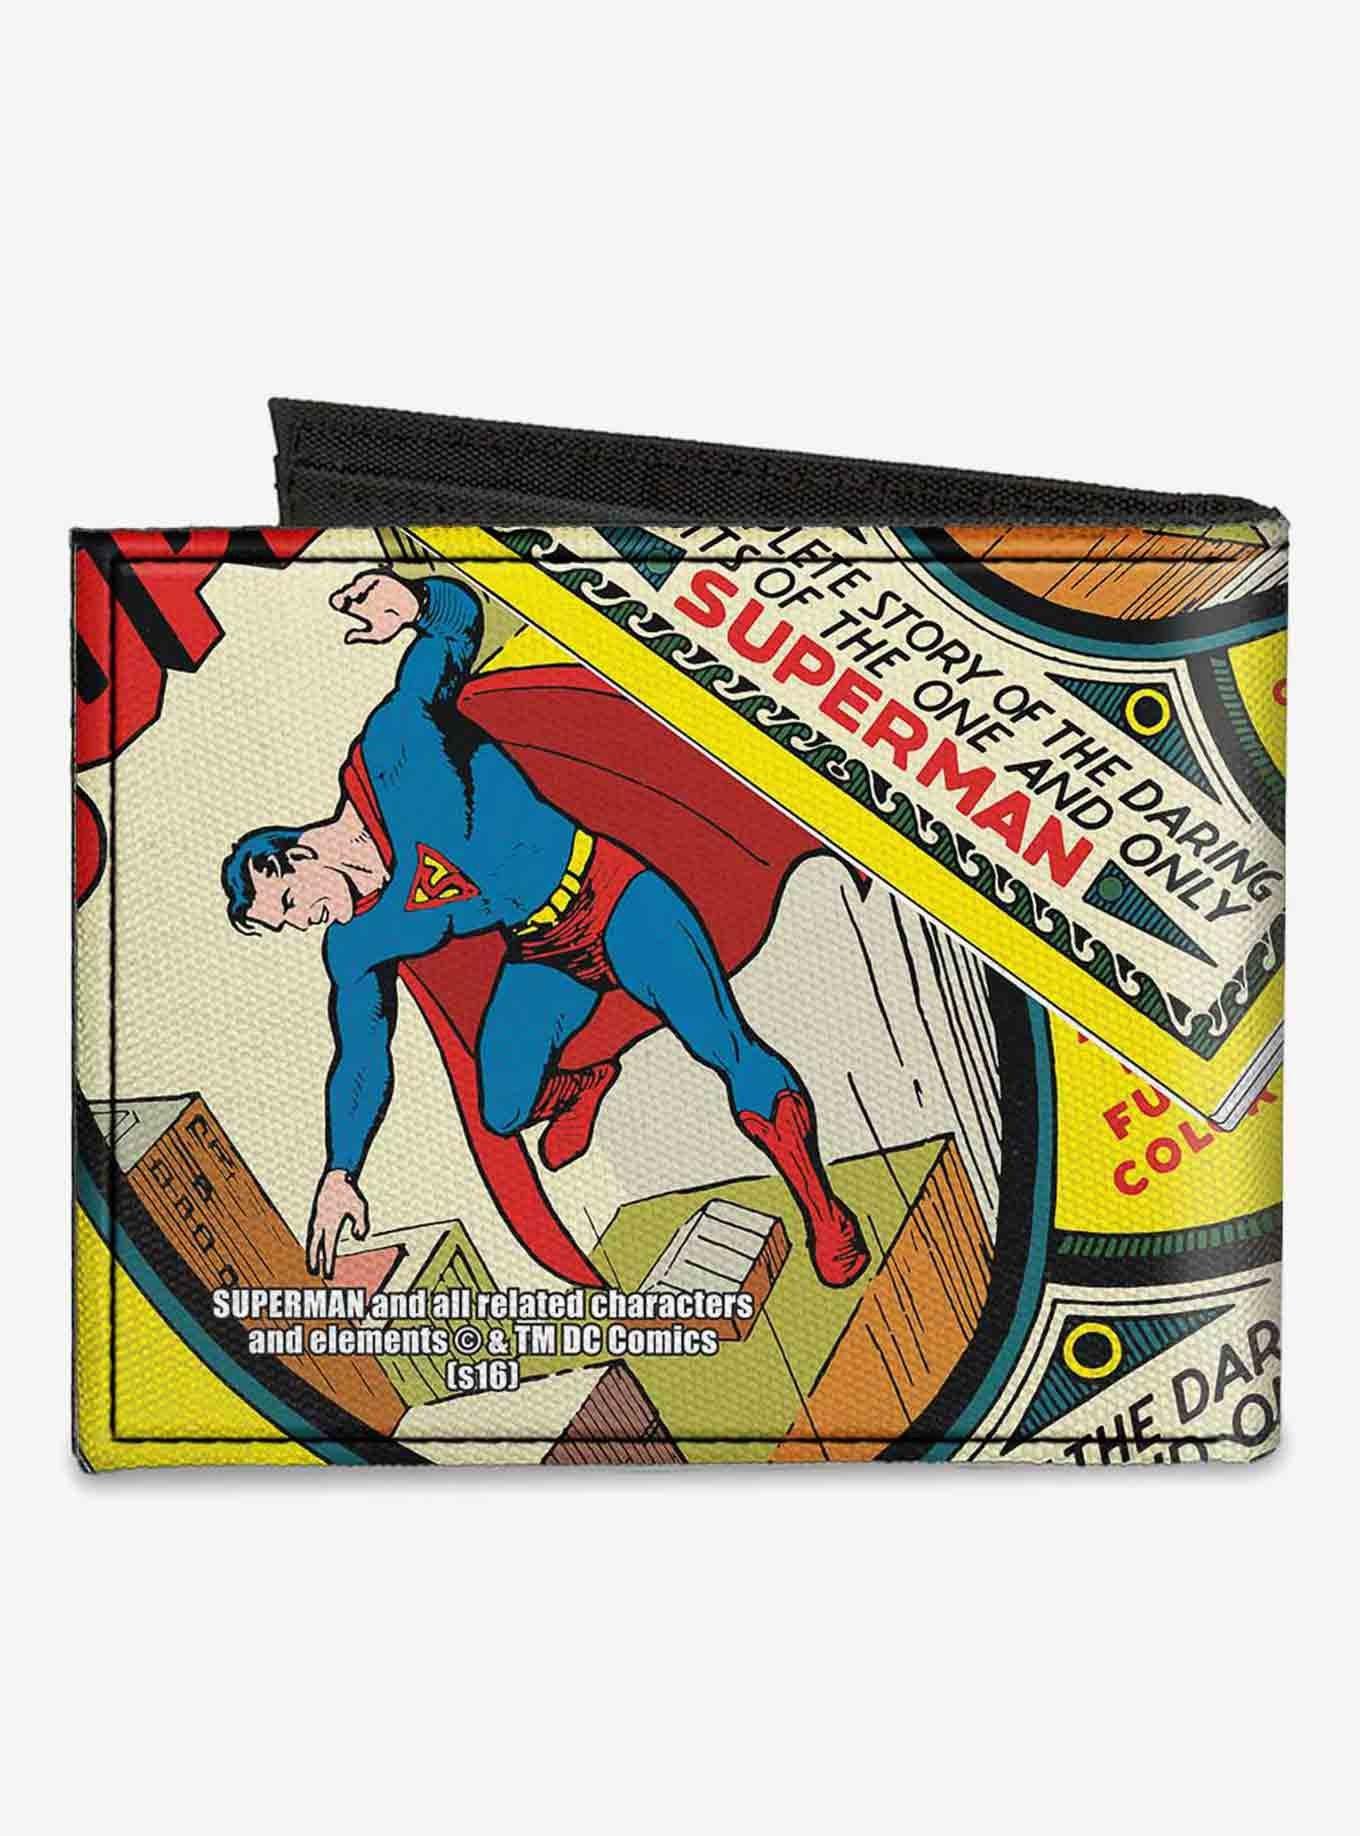 Canvas Bi-Fold Wallet - Justice Leaue Supreme Team Batman Chest